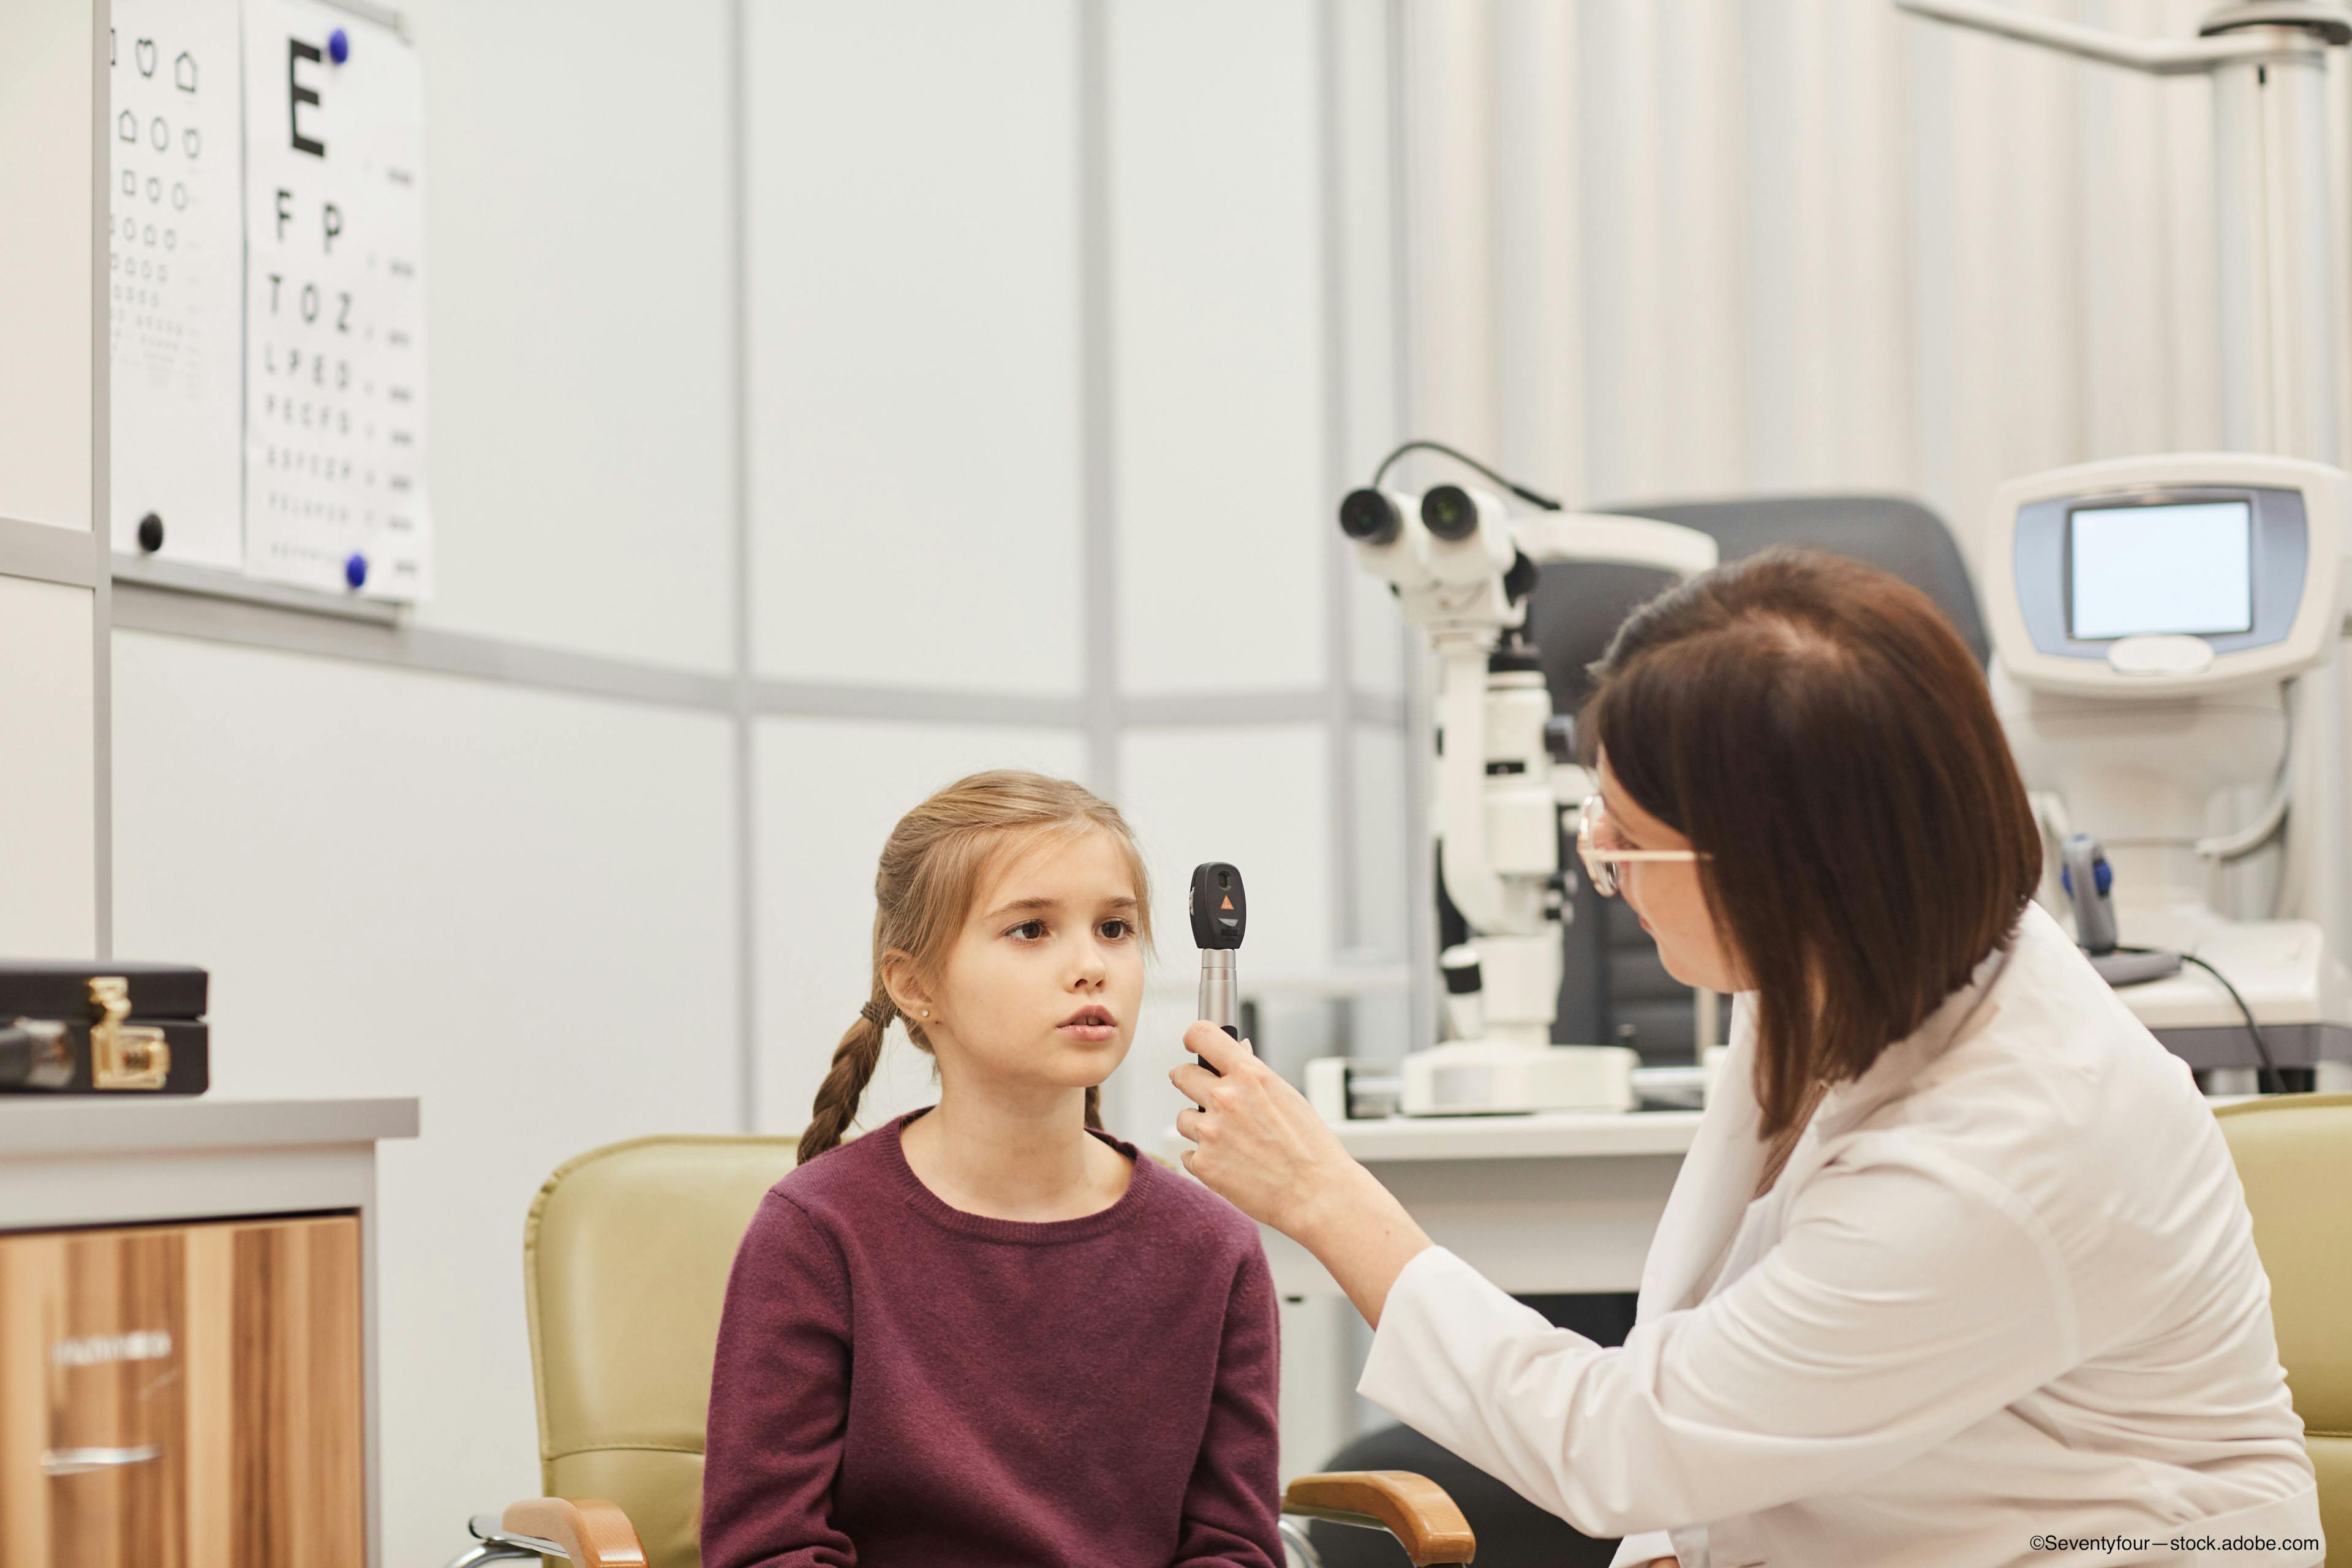 Perfecting the pediatric eye examination